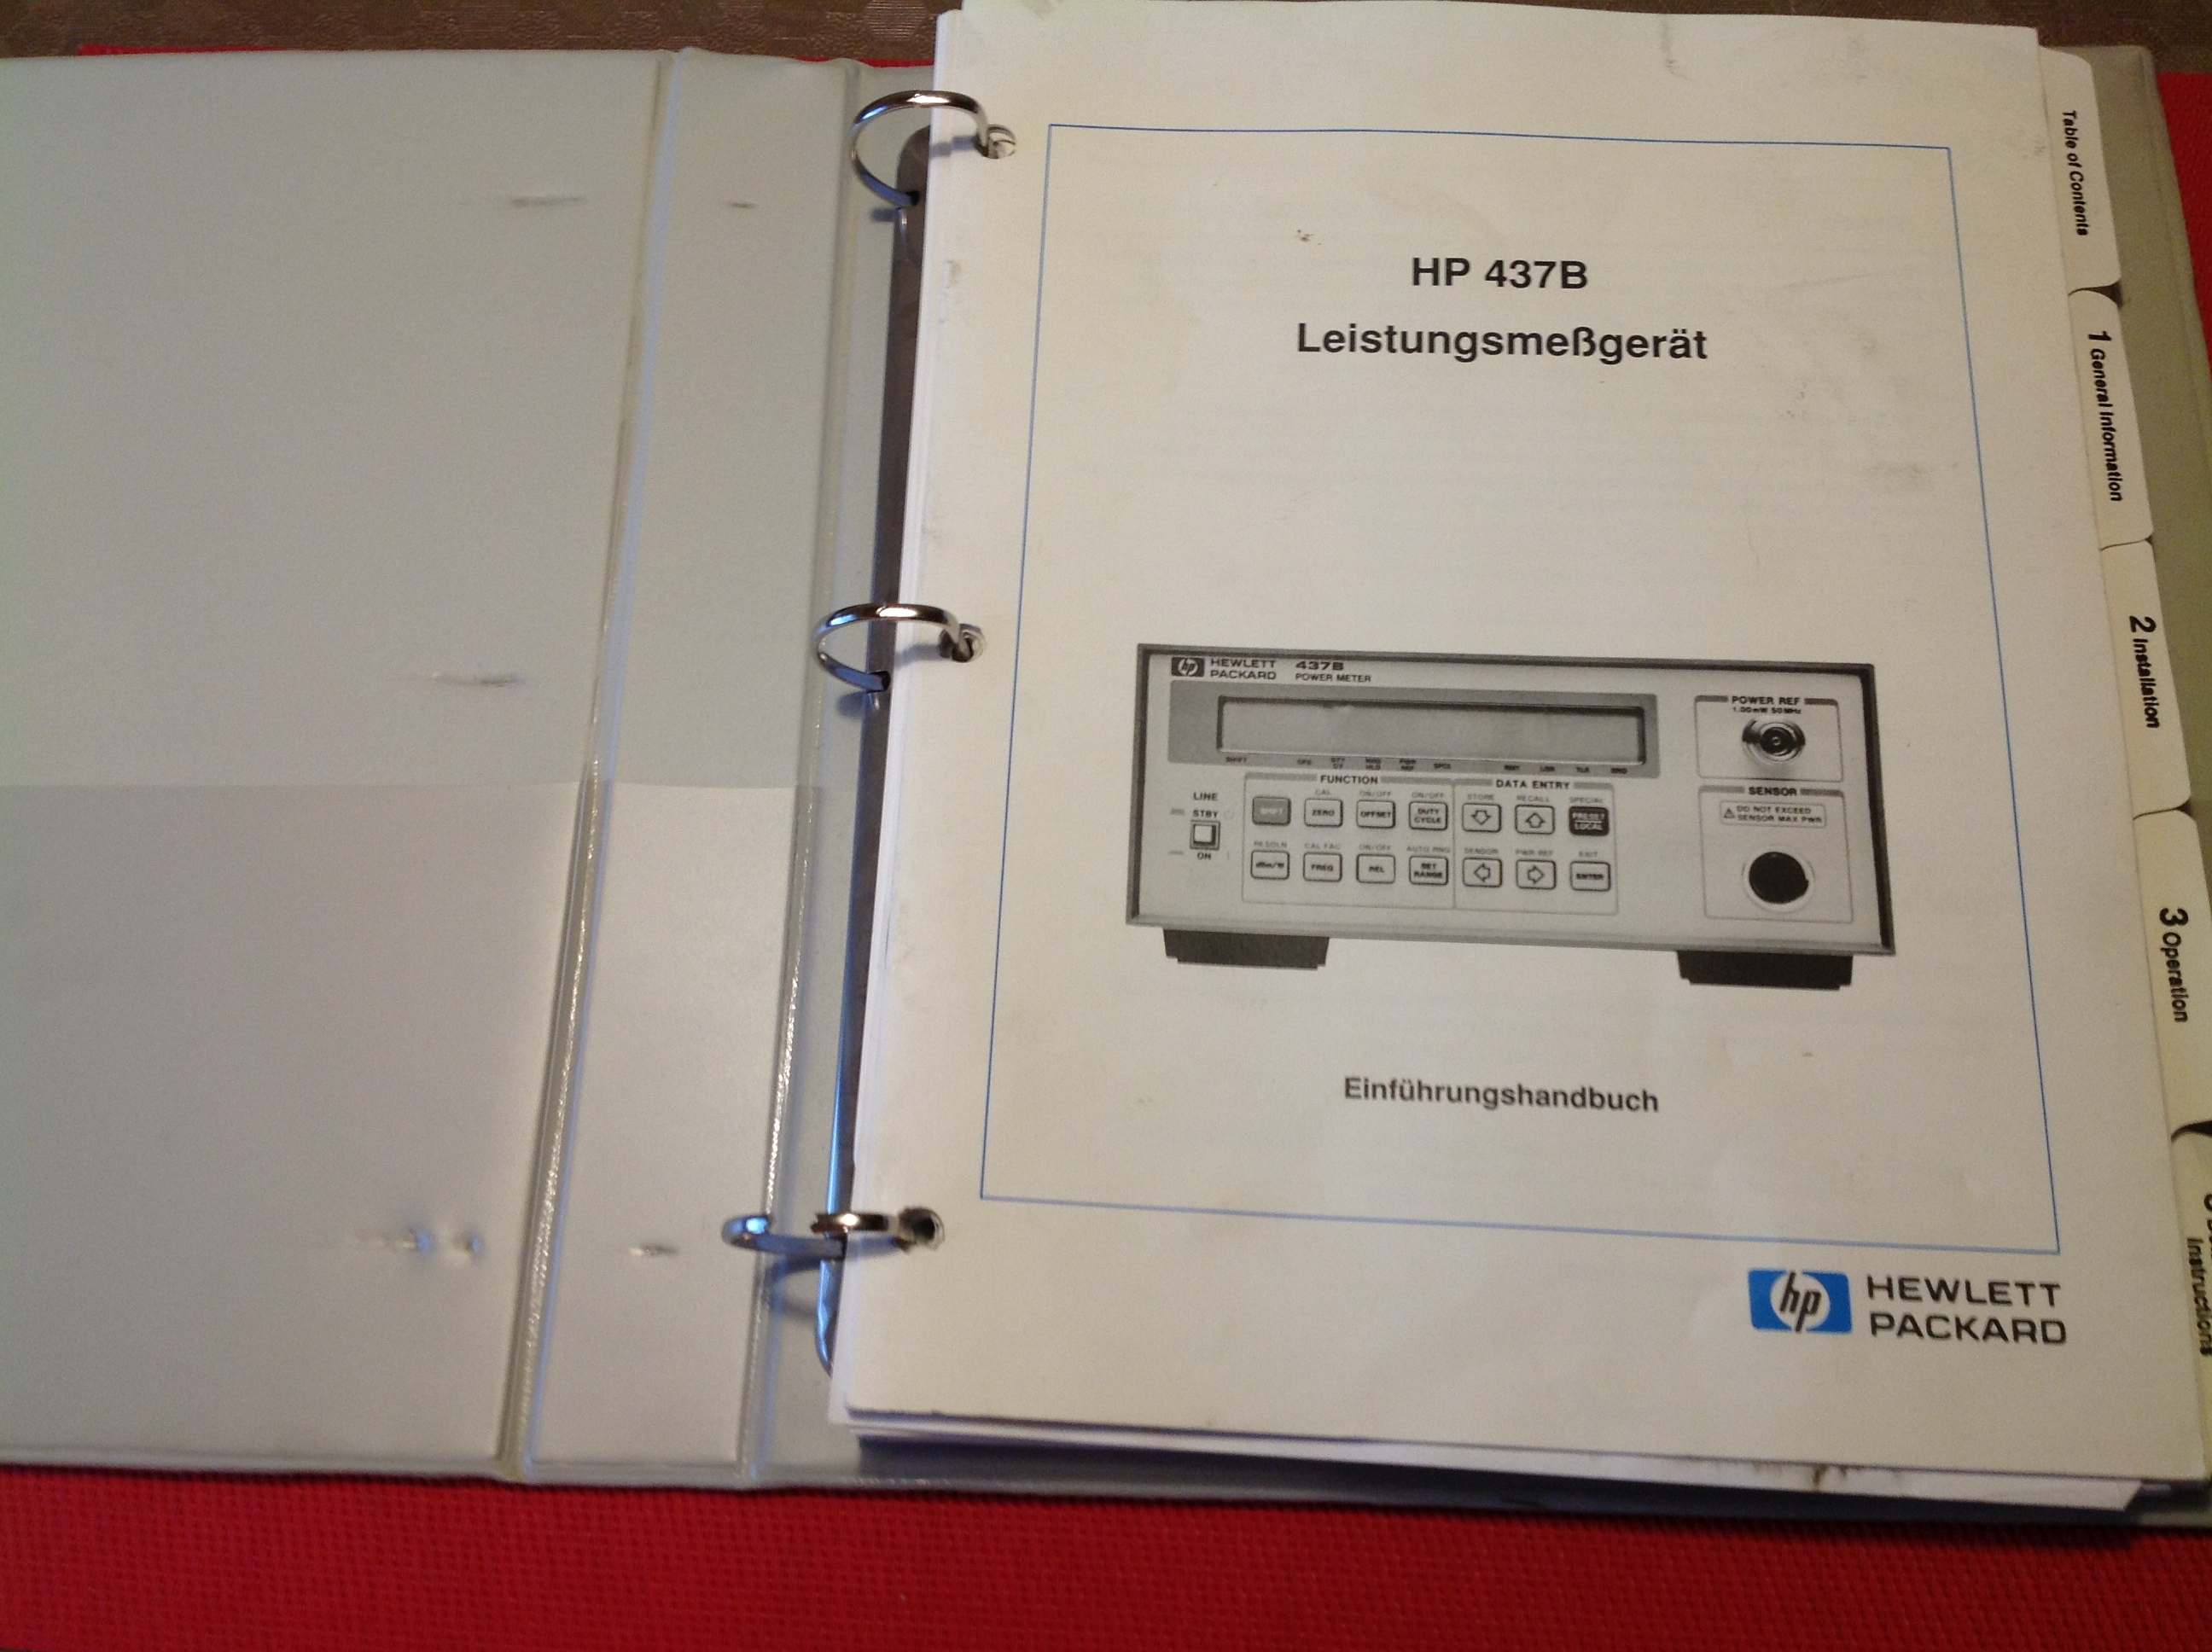 Hewlett Packard 437B Power Meter / Leistungsmesser